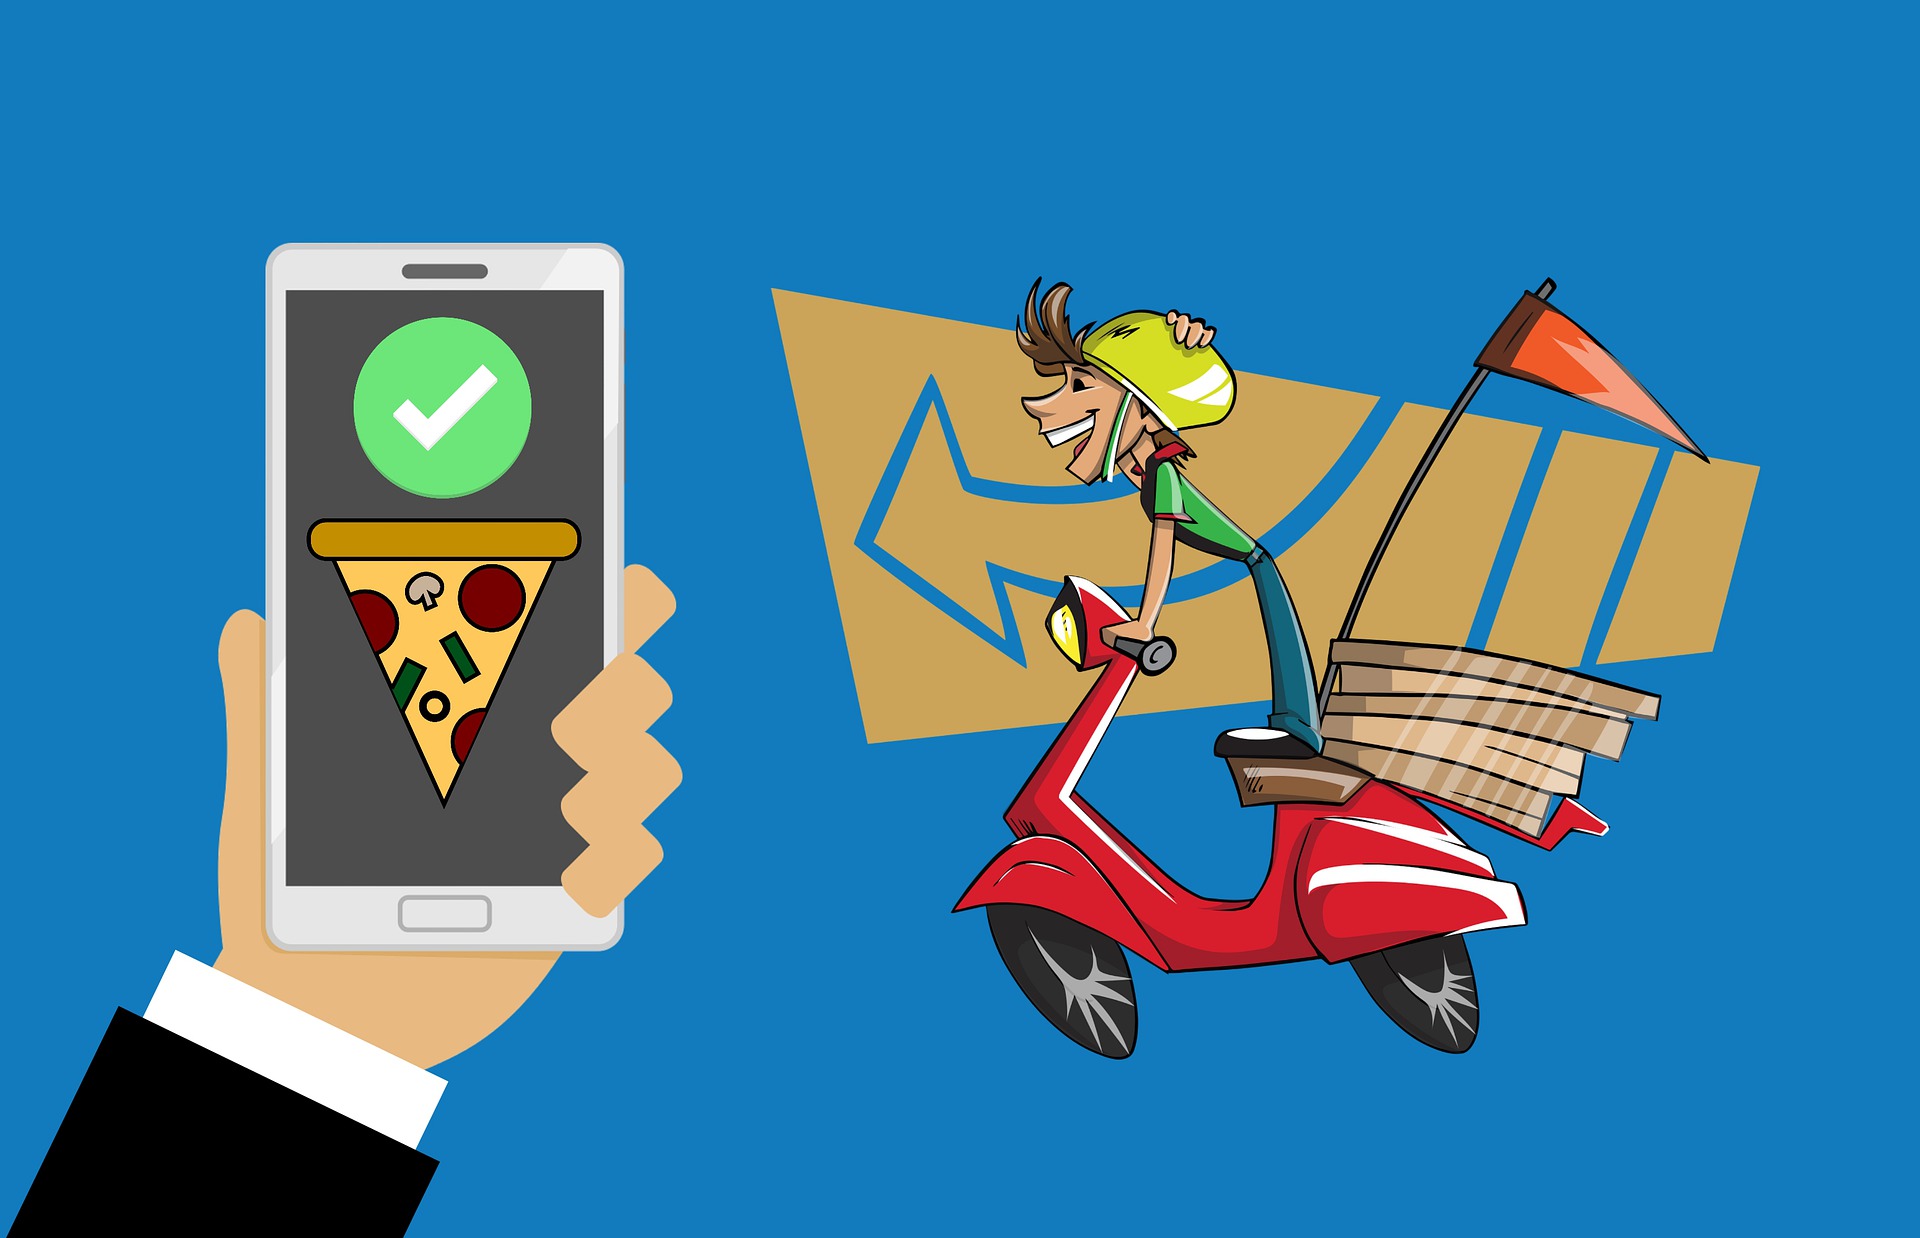 rappresentazione grafica food delivery. a sinistra uno smartphone a destra una rappresentazione di un ragazzo su scooter che consegna le pizze